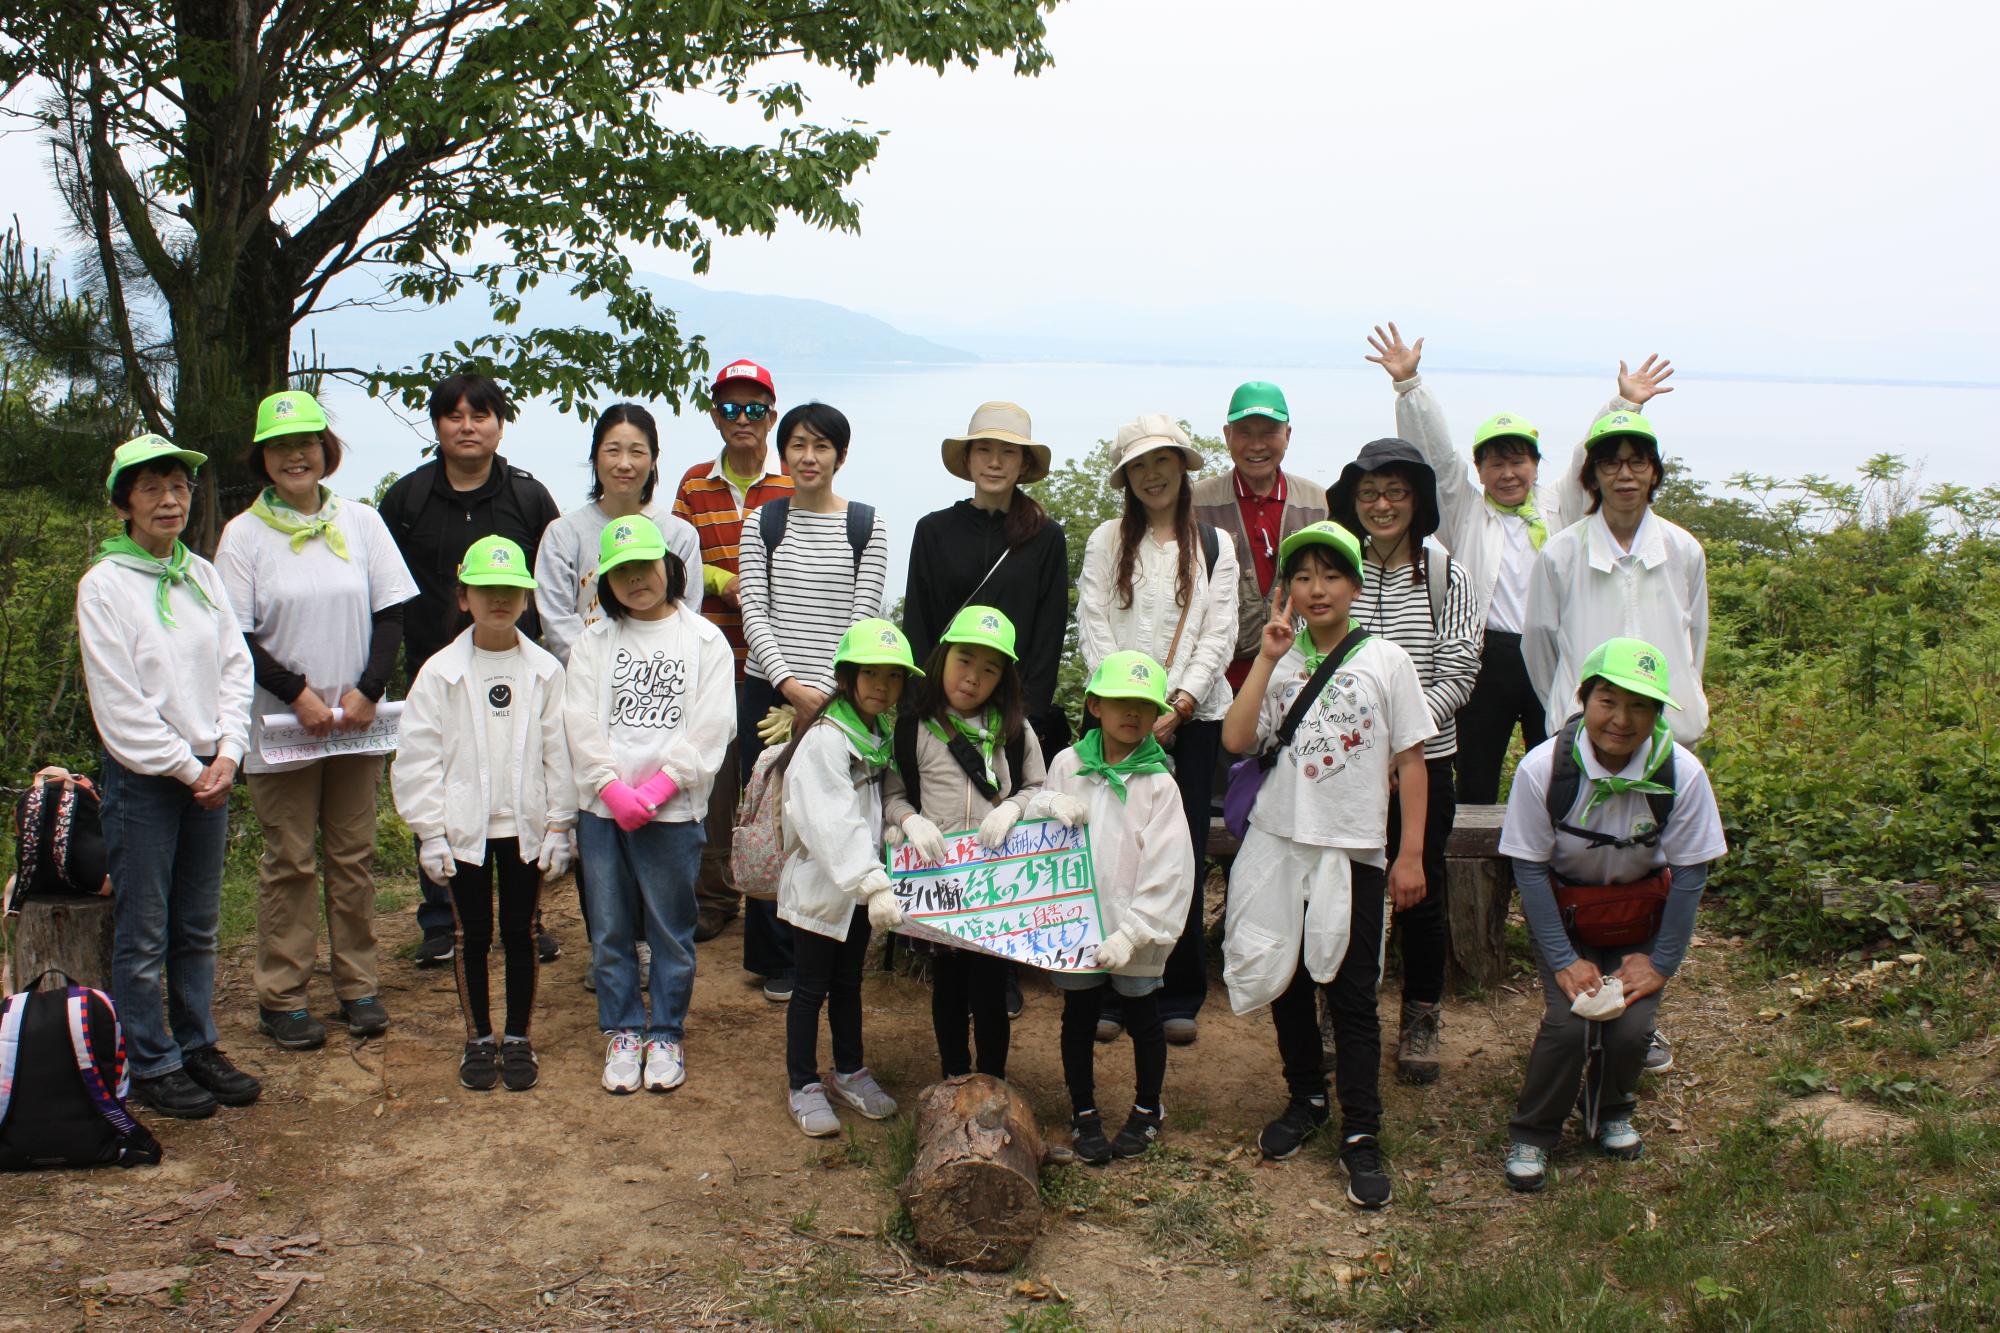 緑の少年団沖島で記念撮影